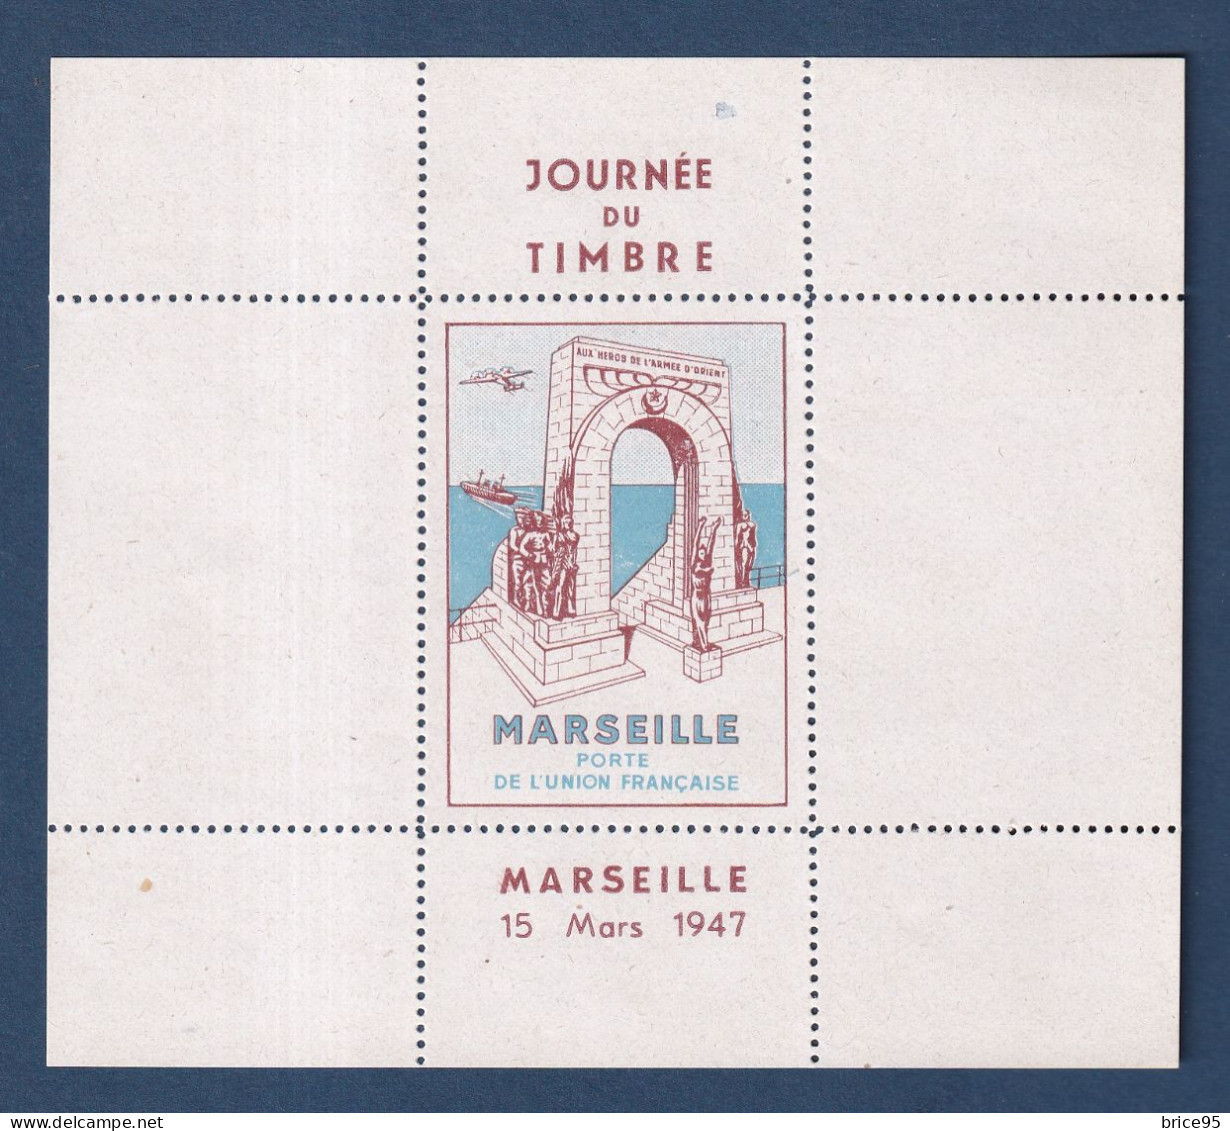 France - Vignette - Journée Du Timbre - Marseille - Porte De L'union Française - Neuf Sans Charnière ** - 15 Mars 1947 - Philatelic Fairs